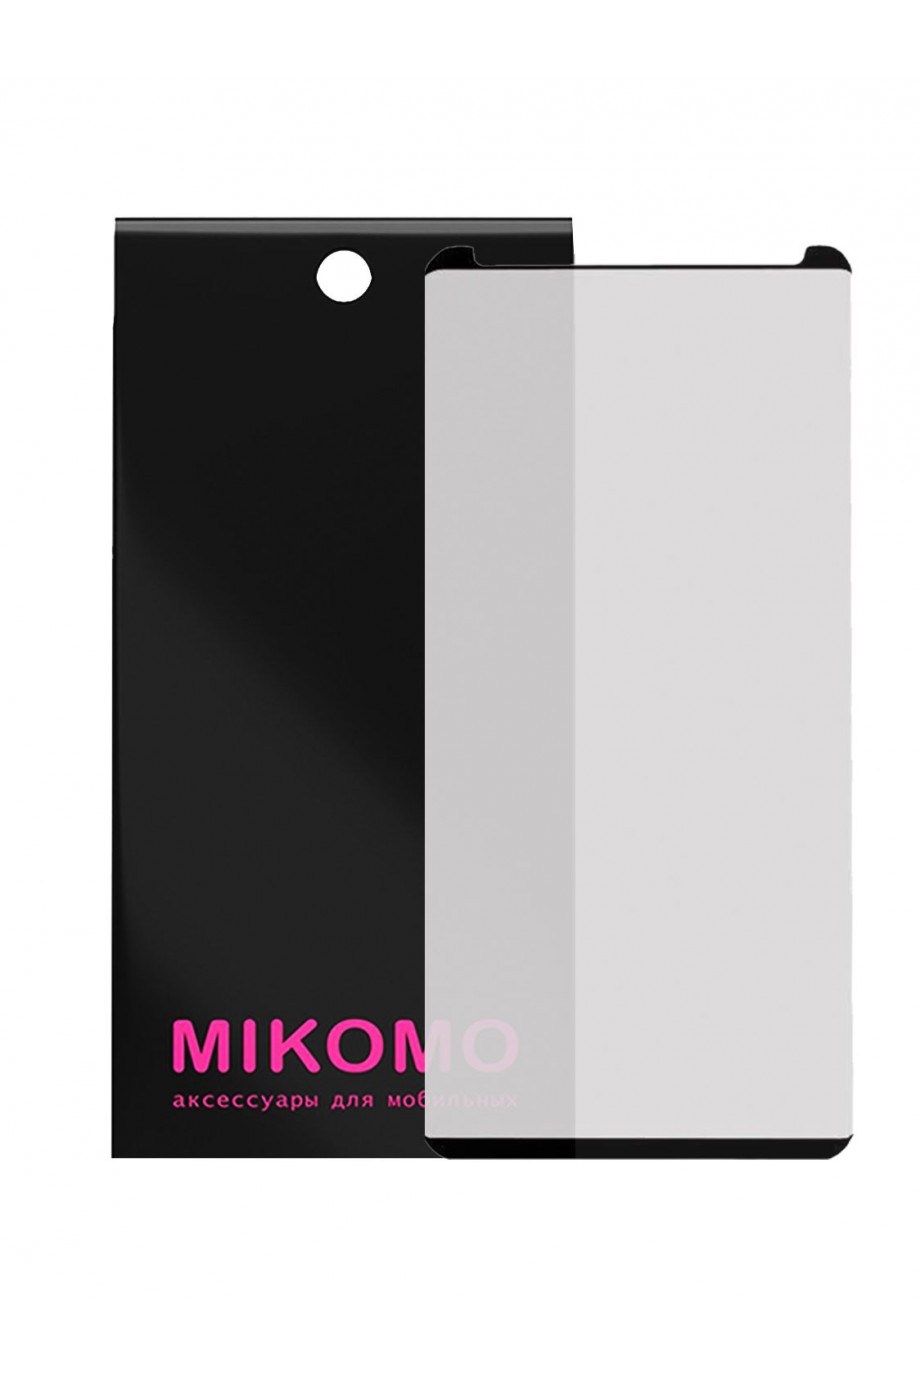 Защитное стекло 3D Mikomo для Samsung Galaxy Note 9, черная рамка, полный клей